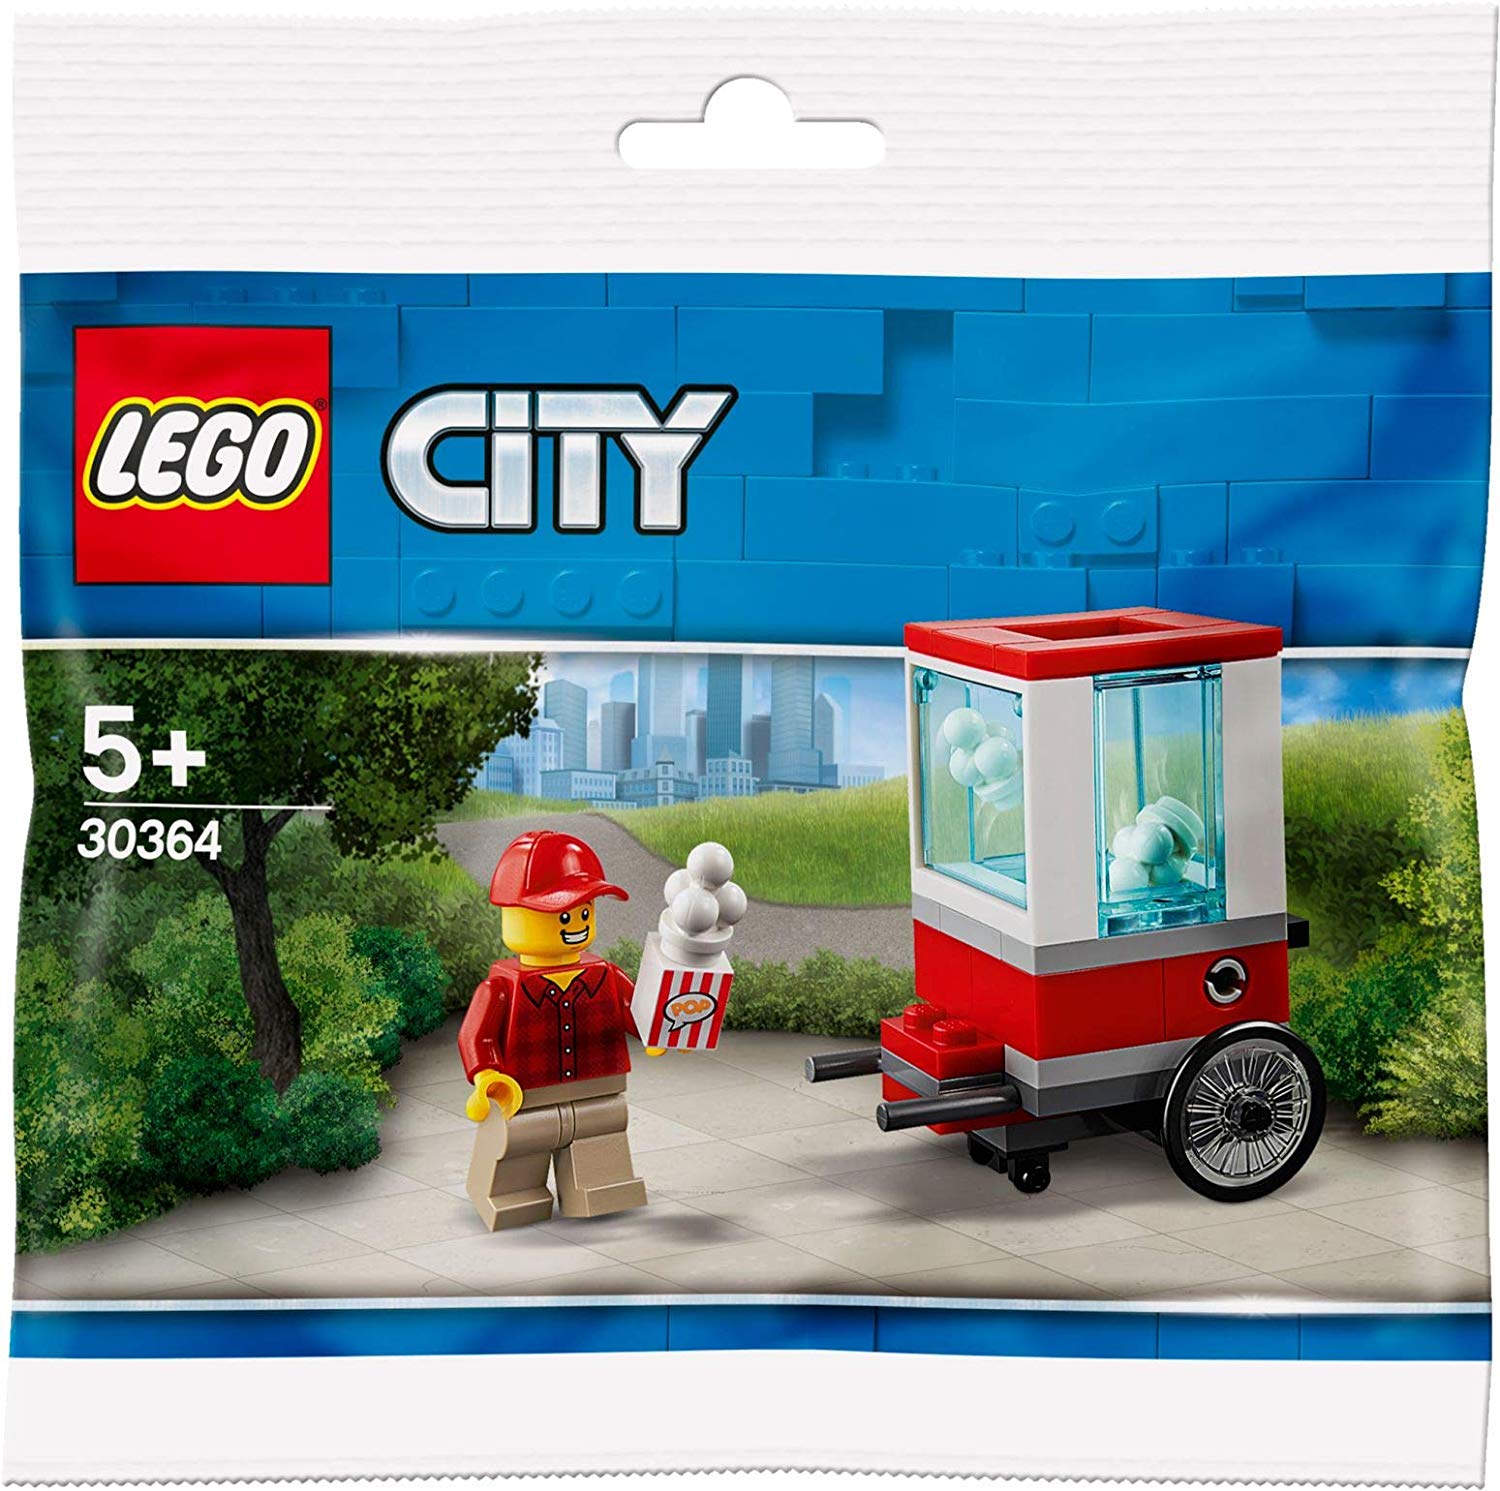 Lego City 30364 Popcorn Trolley